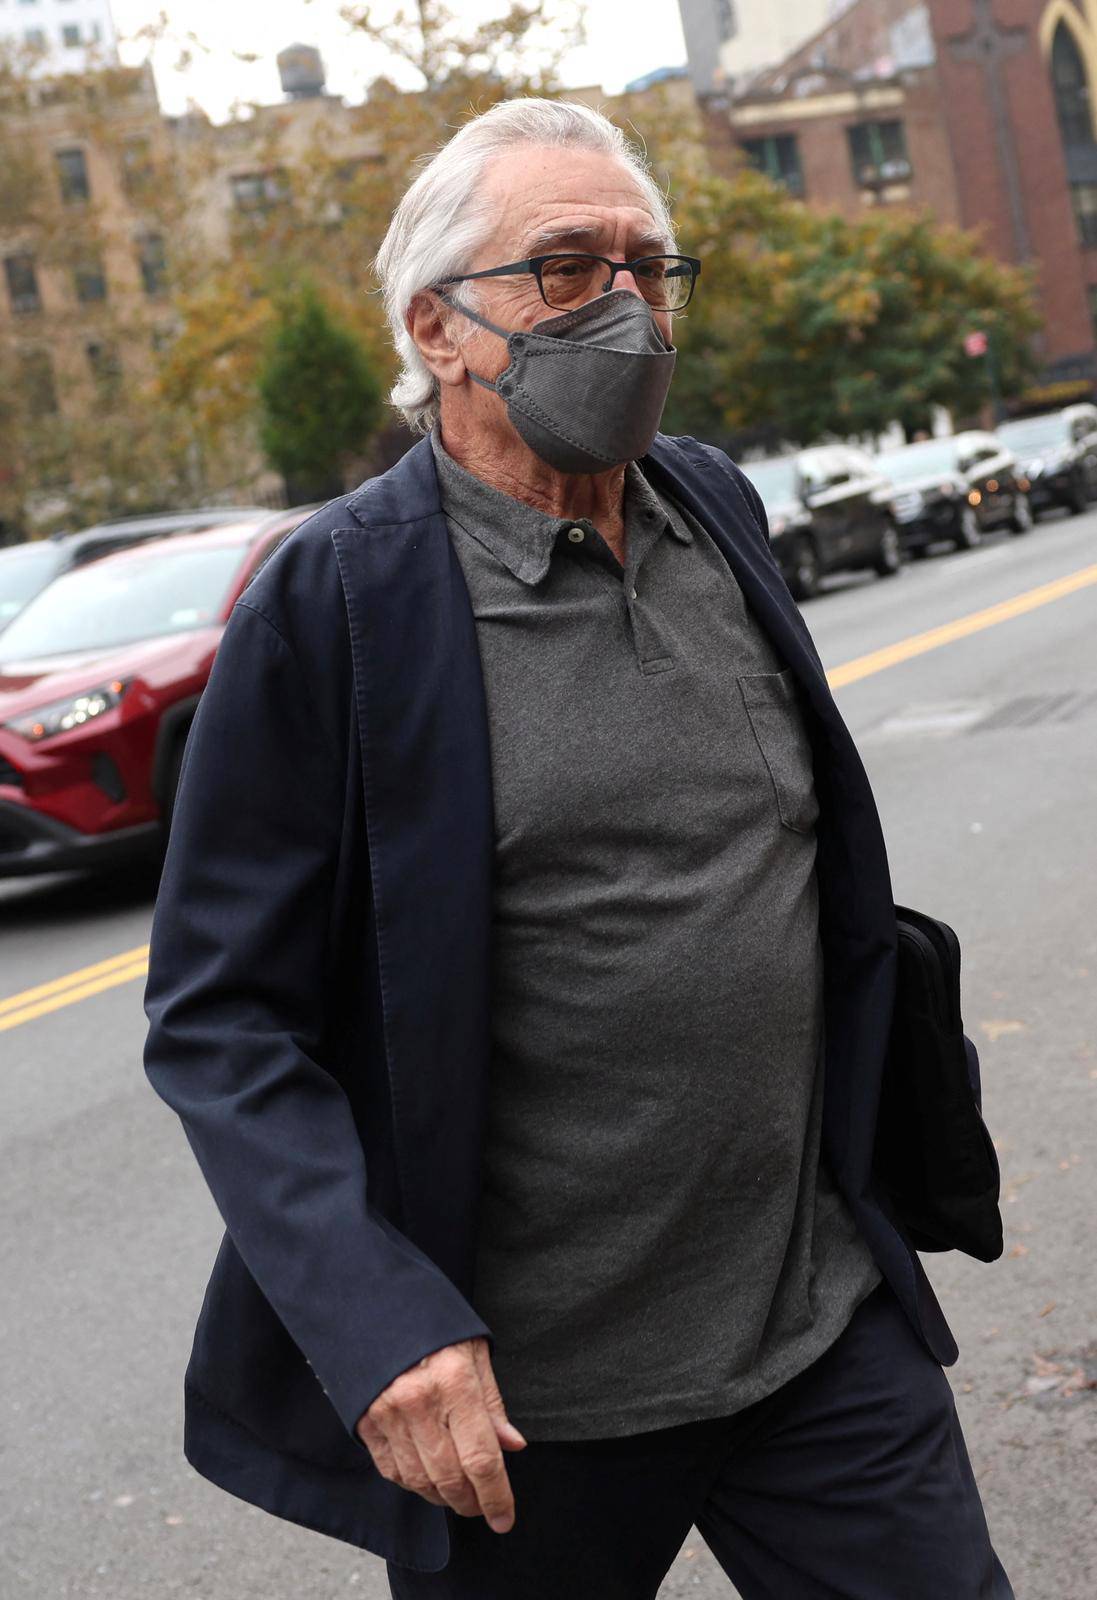 Robert De Niro arrives at U.S. Court in New York